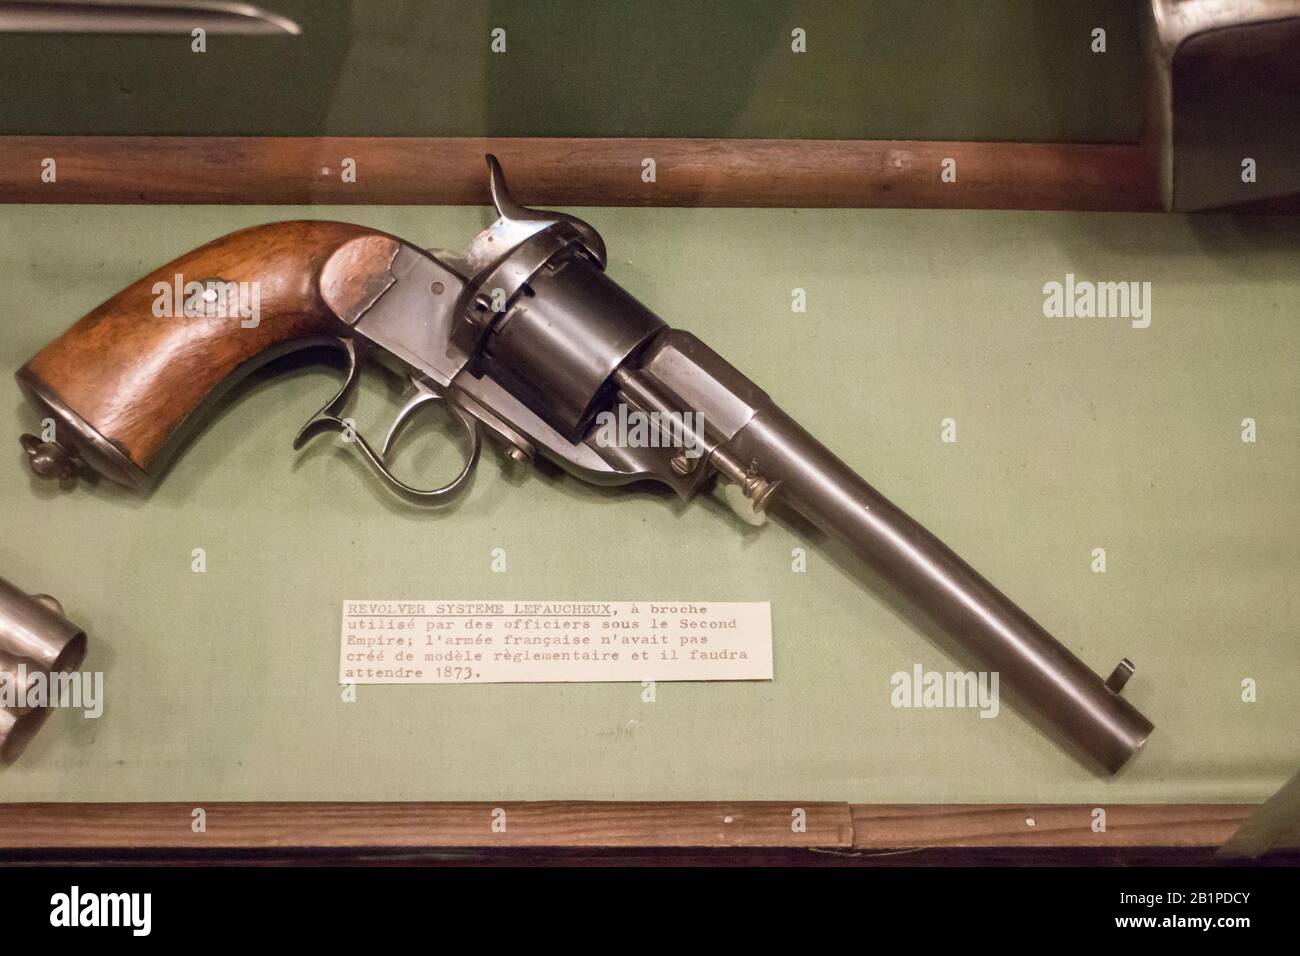 Musée de l'Emperi,Salon-de-Provence : Revolver système LEFAUCHEUX,cartouche  à broche Stock Photo - Alamy